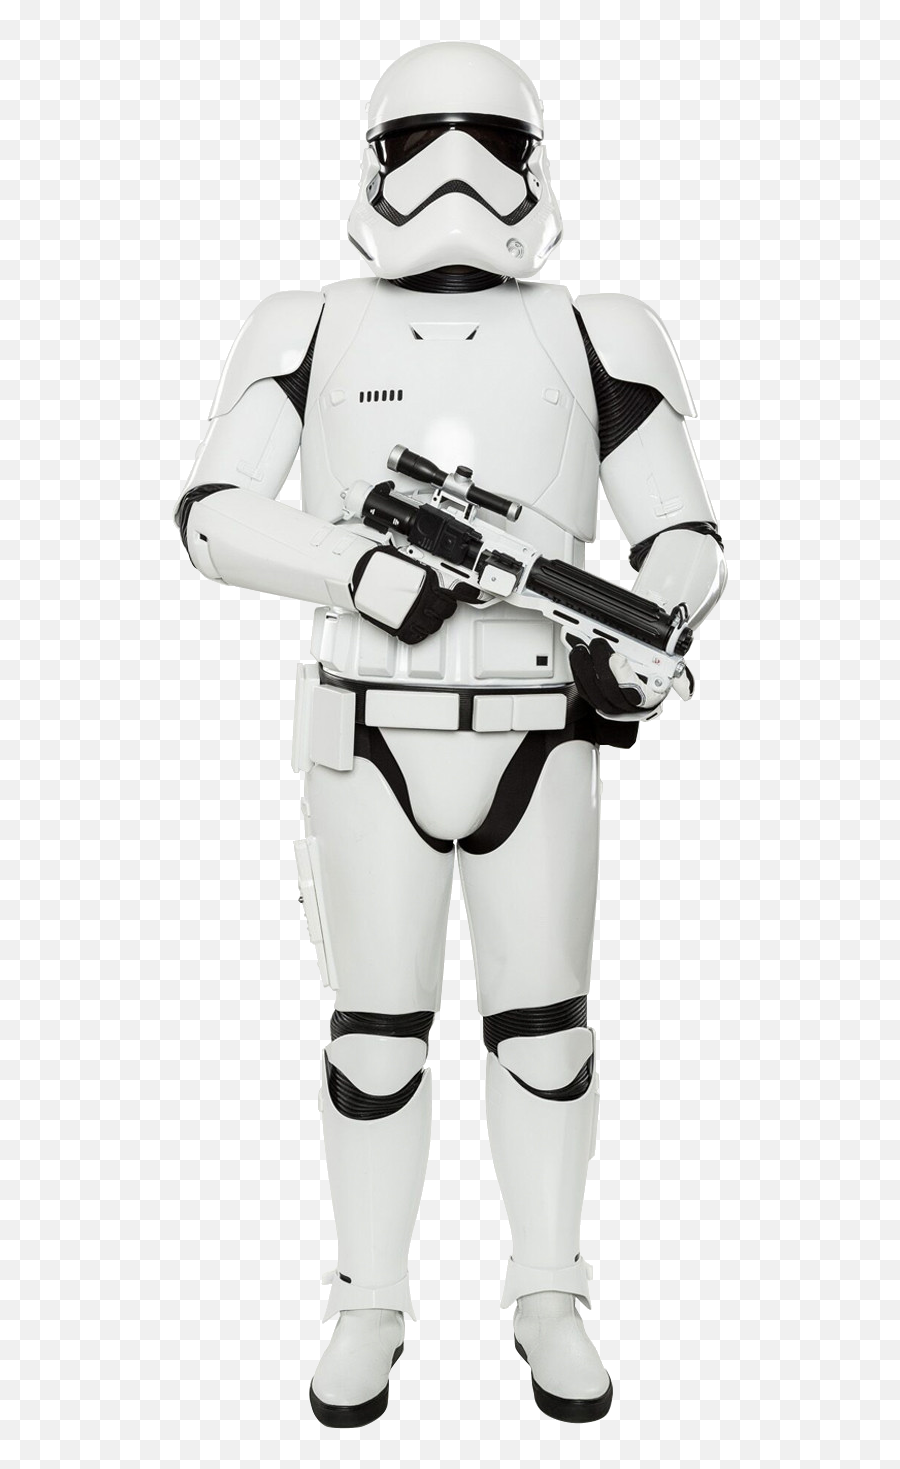 Rpggamerorg The Force D20 Inspiration - First Order Stormtrooper Armor Emoji,Emotion Novos